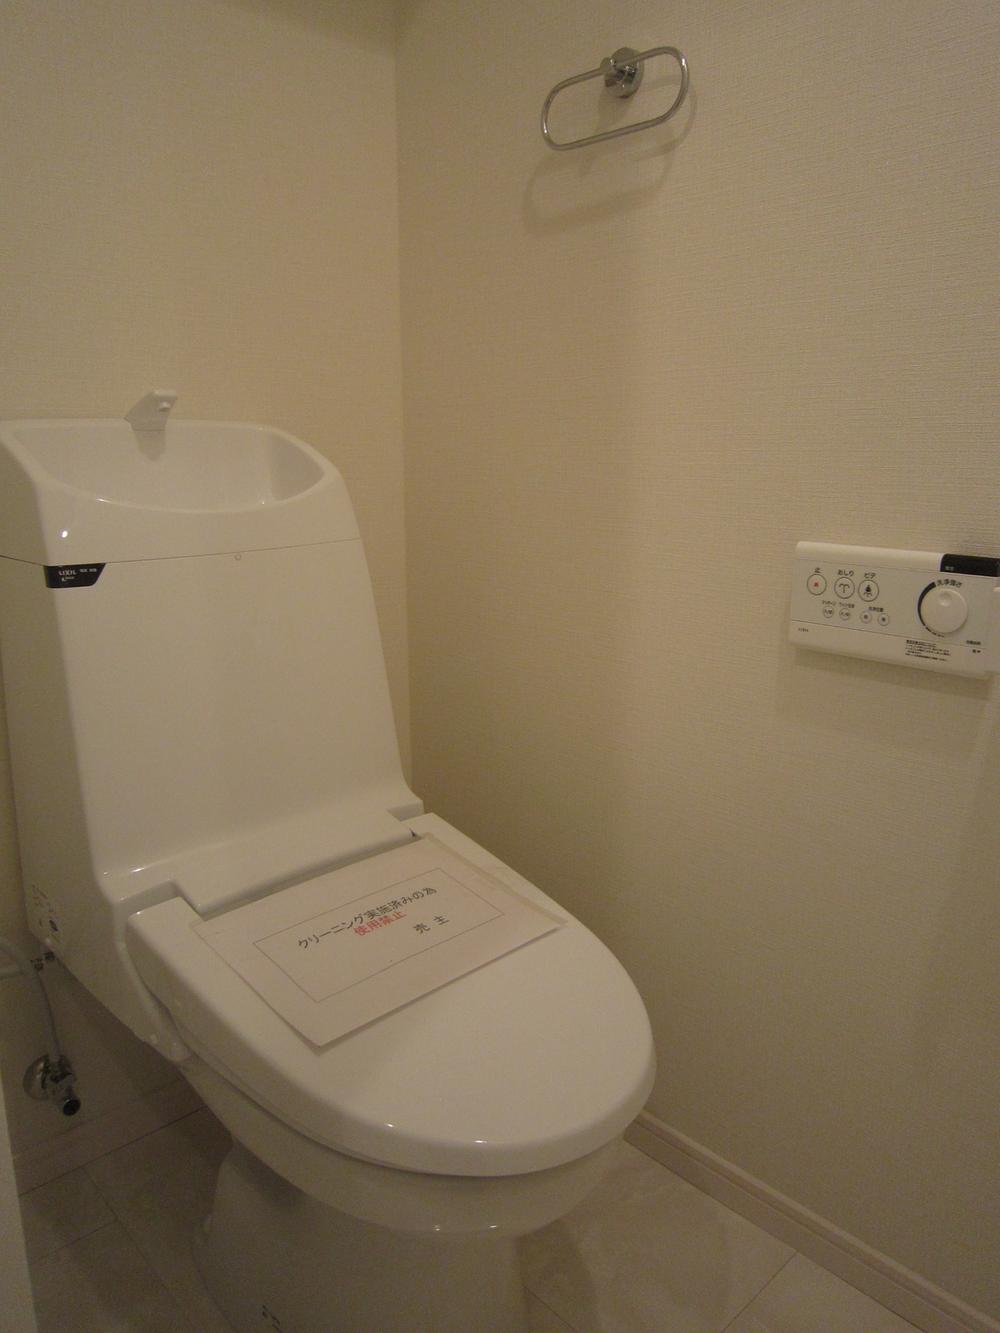 Toilet. Indoor (2013 November) shooting